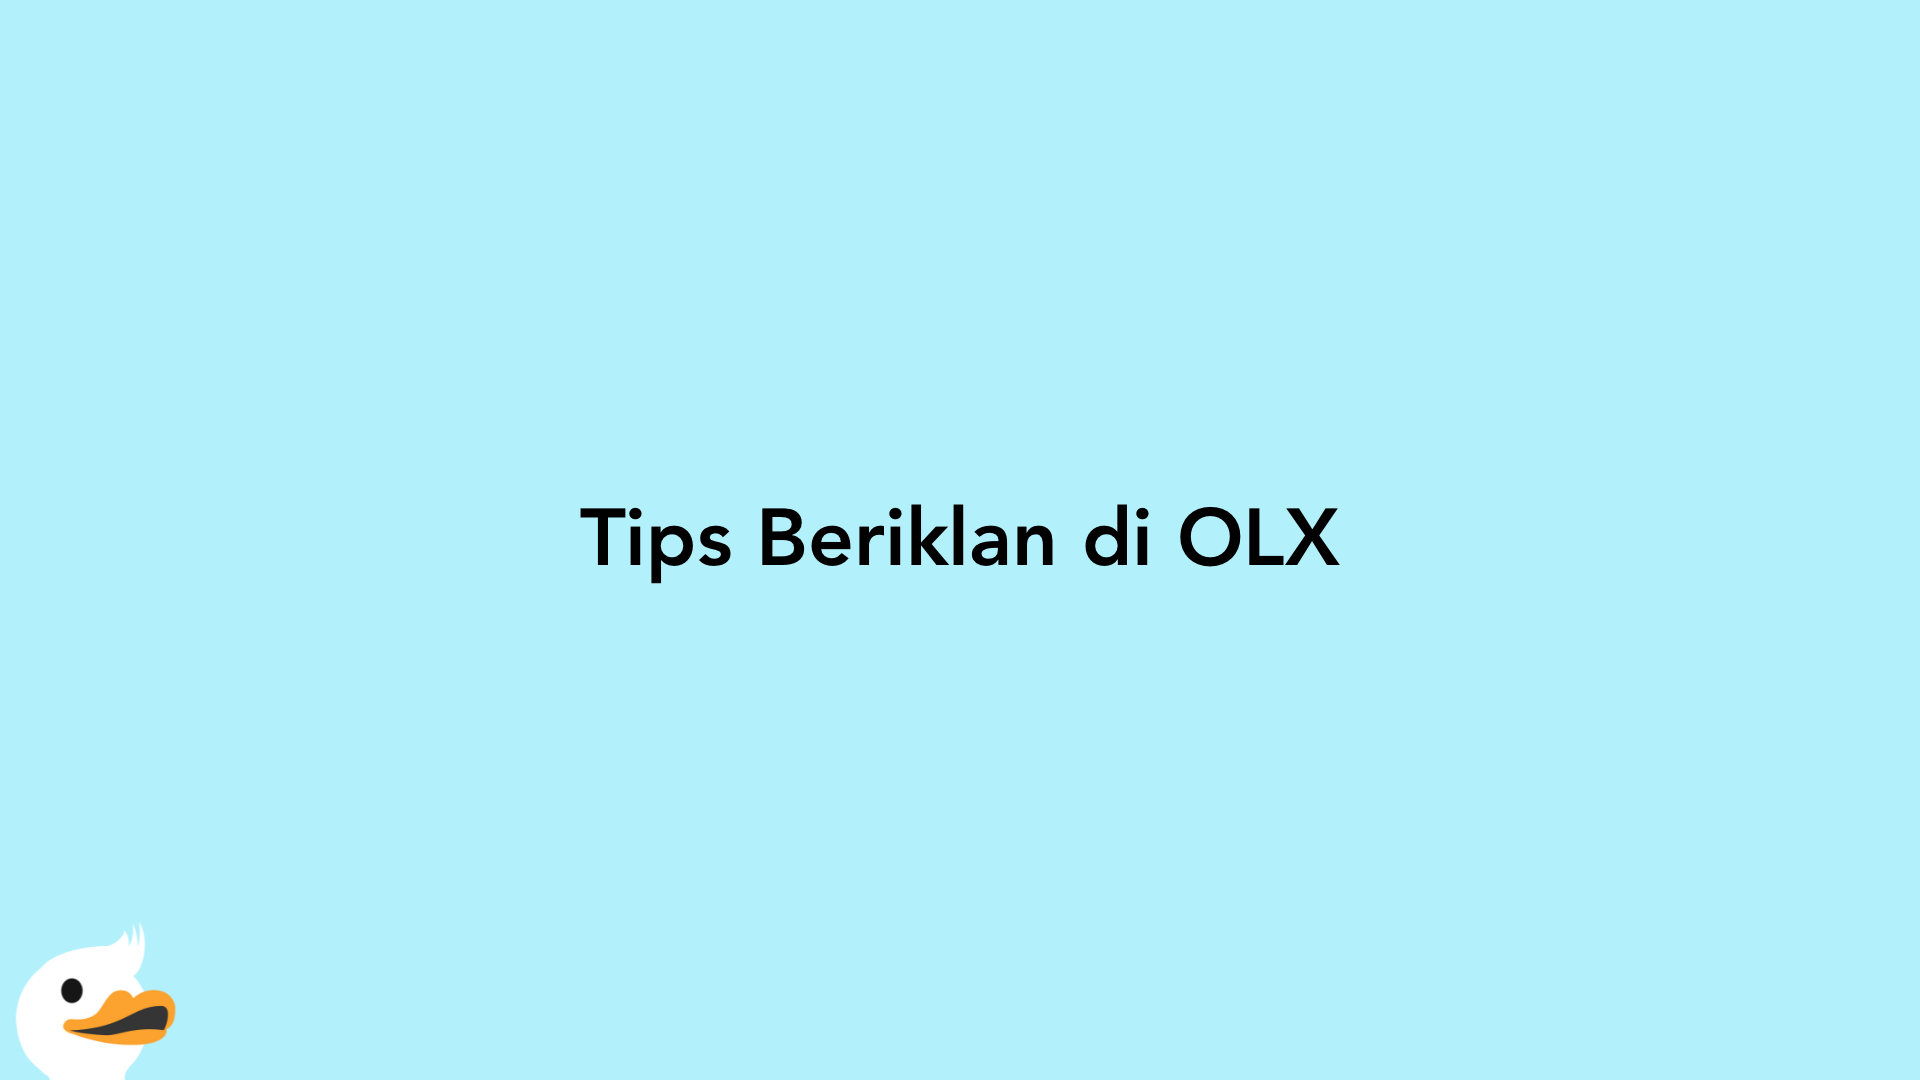 Tips Beriklan di OLX